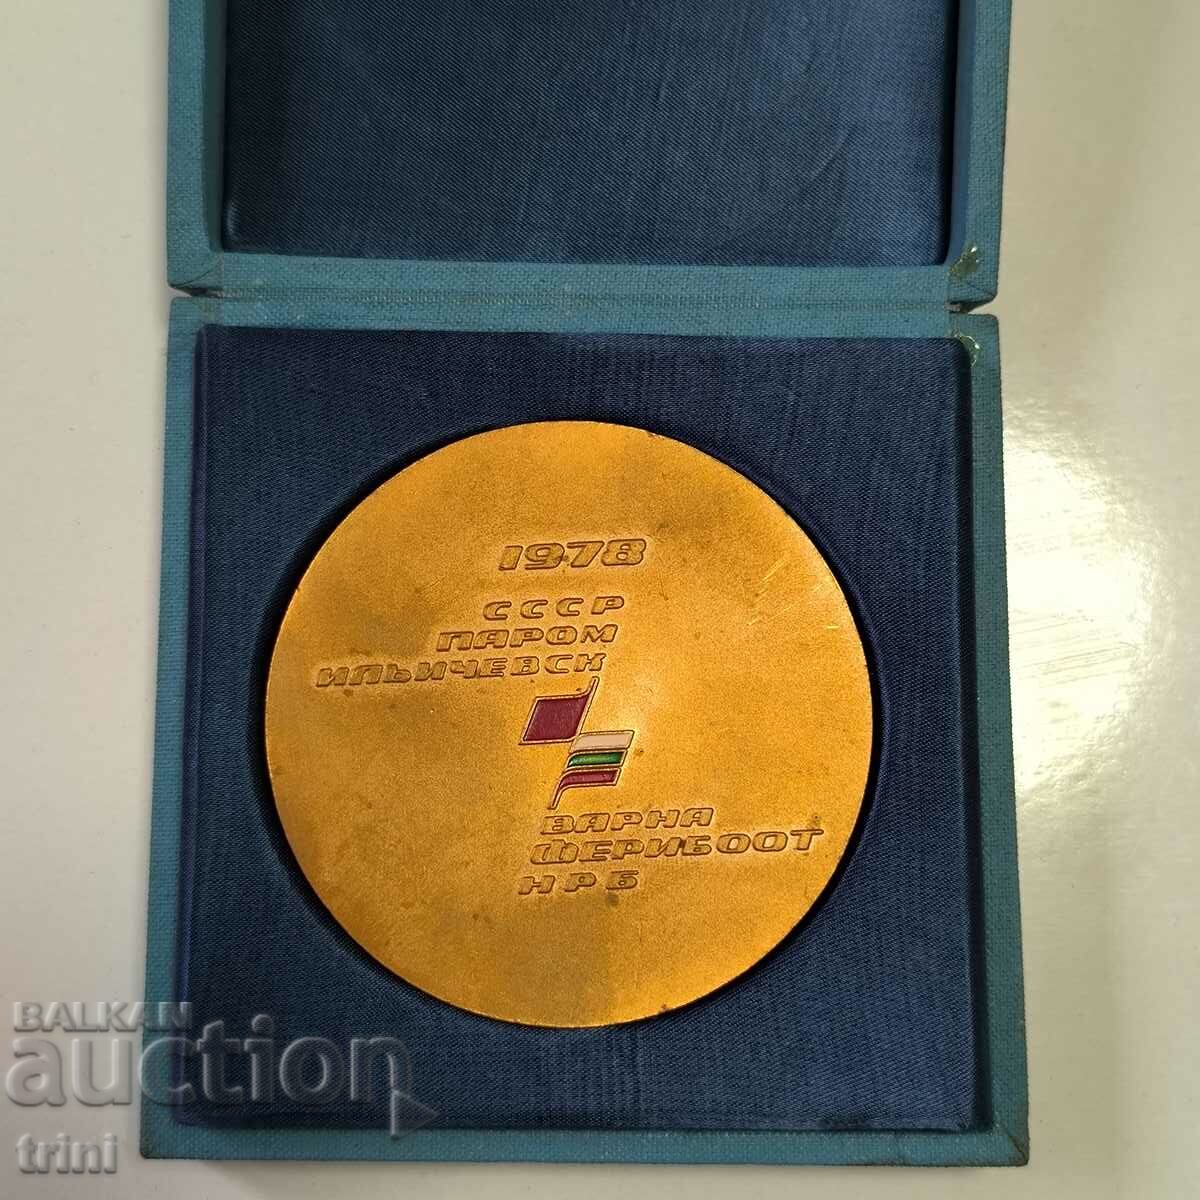 Настолен медал Ферибот Варна - Иличовск 1978 България